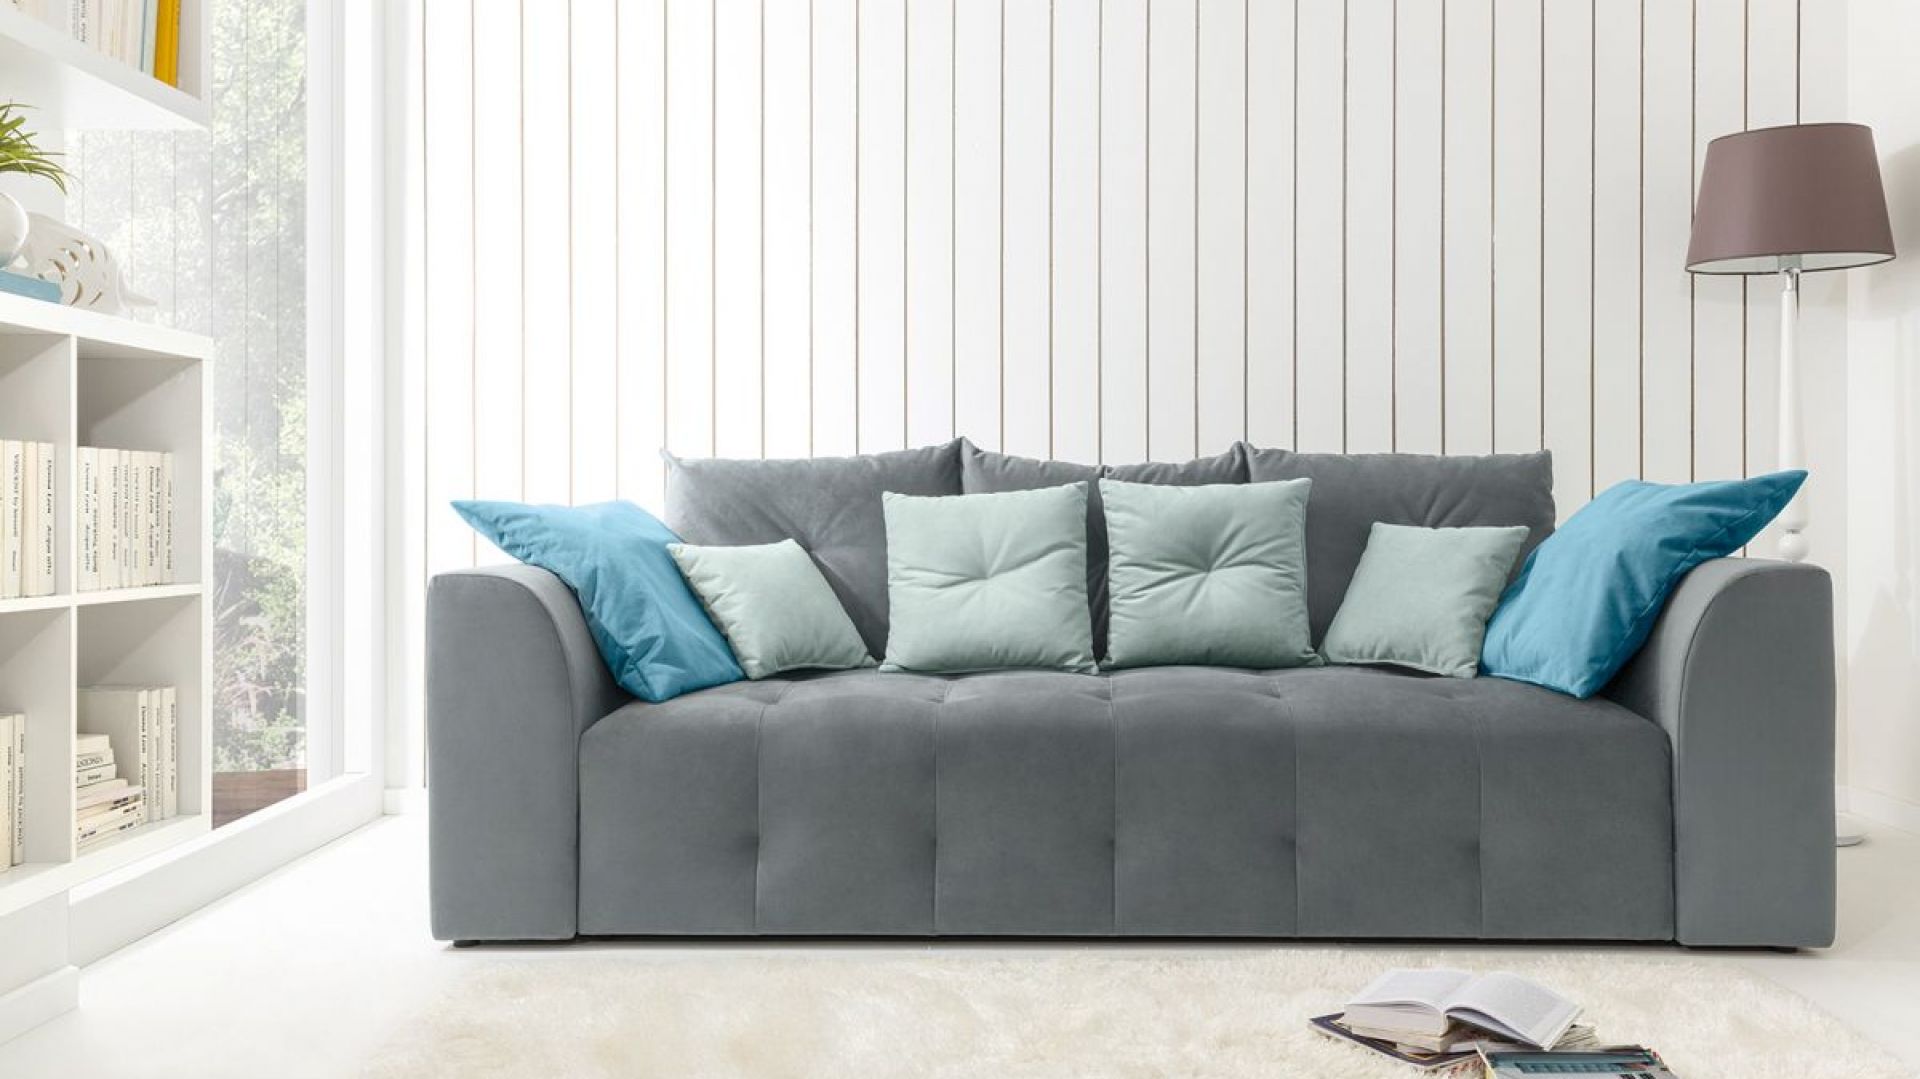 10 sposobów na szarą sofę. Zobacz je wszystkie